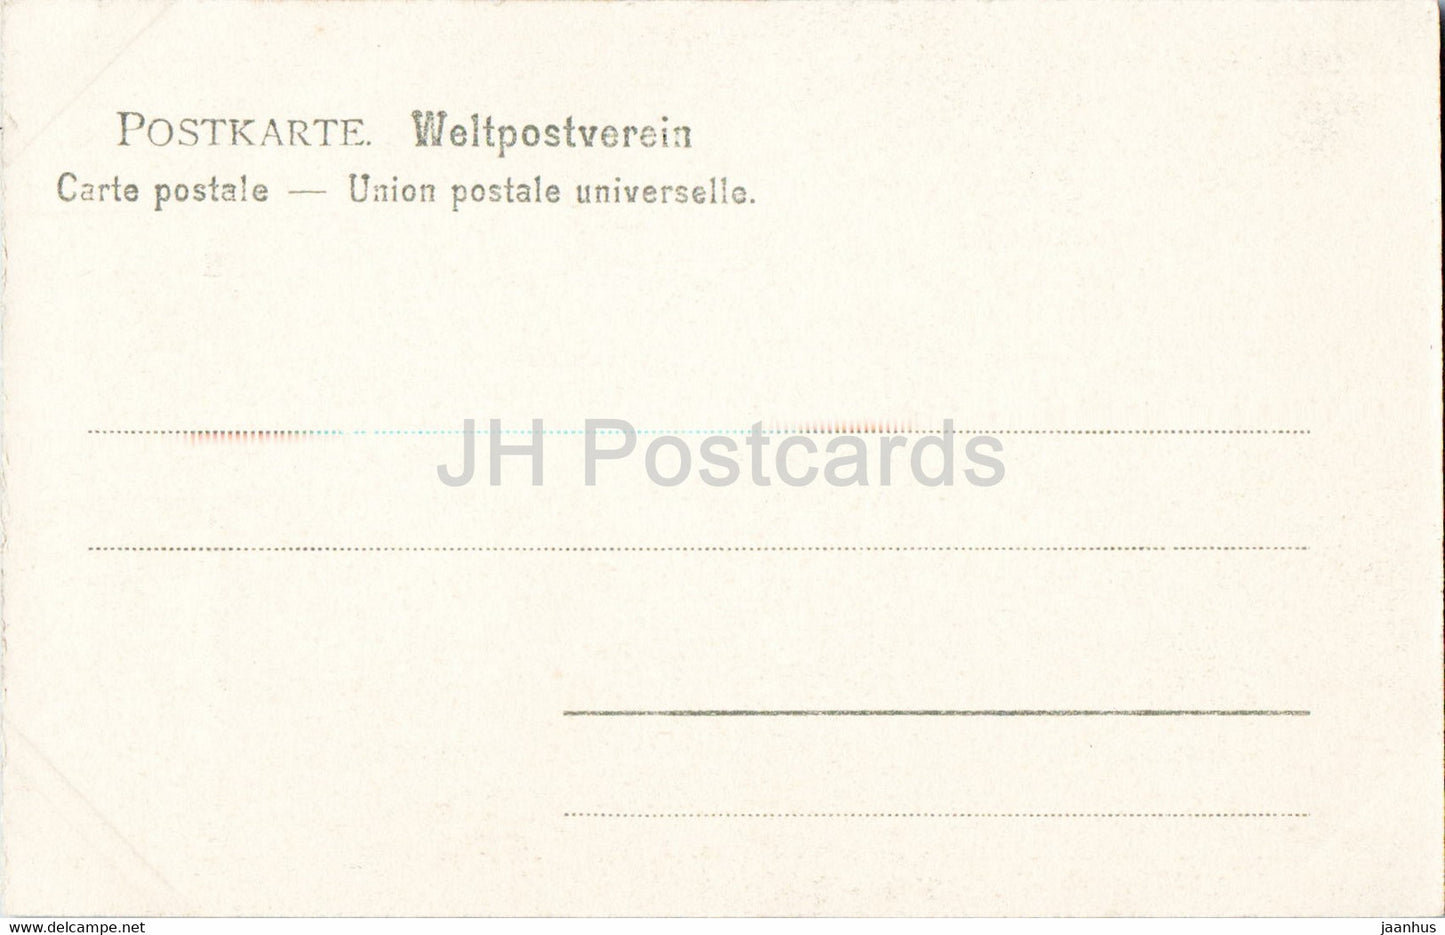 Bärenstein - Schneiderloch - Sachs Schweiz - 778 - alte Postkarte - Deutschland - unbenutzt